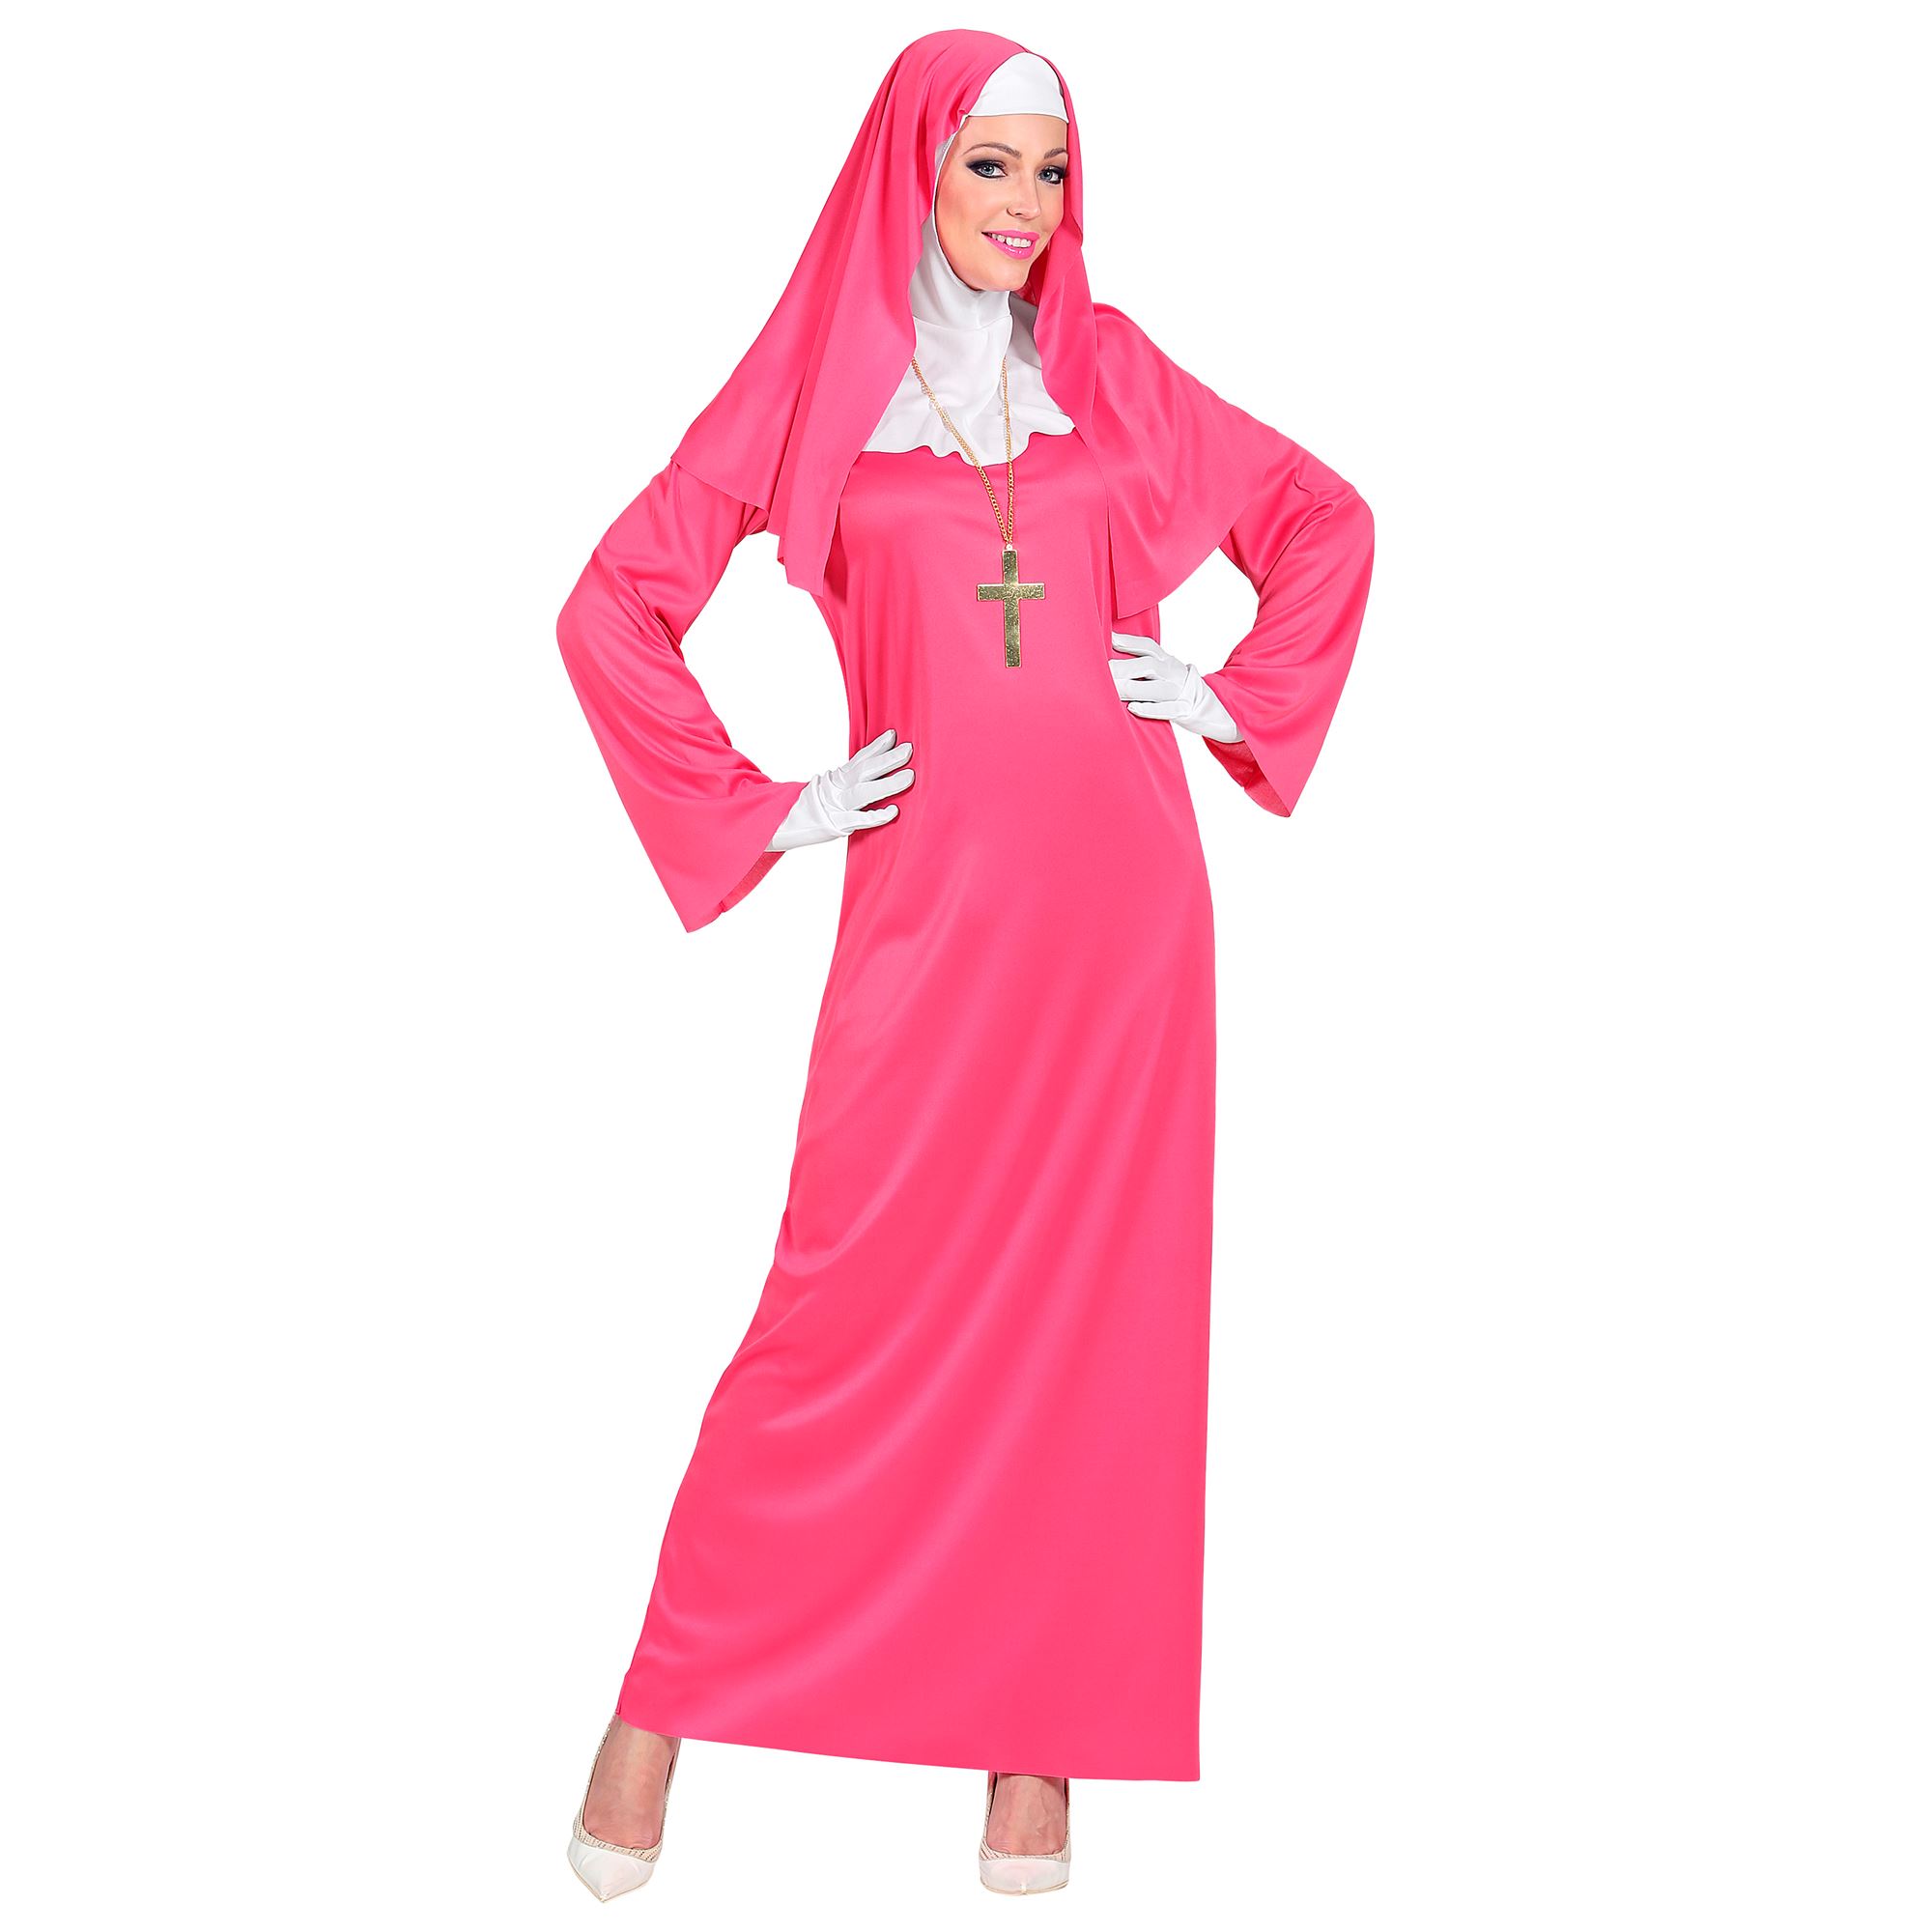 PINKE NONNE Nonnenkostüm Damenkostüm Fasching Heilige Damen Kostüm                 